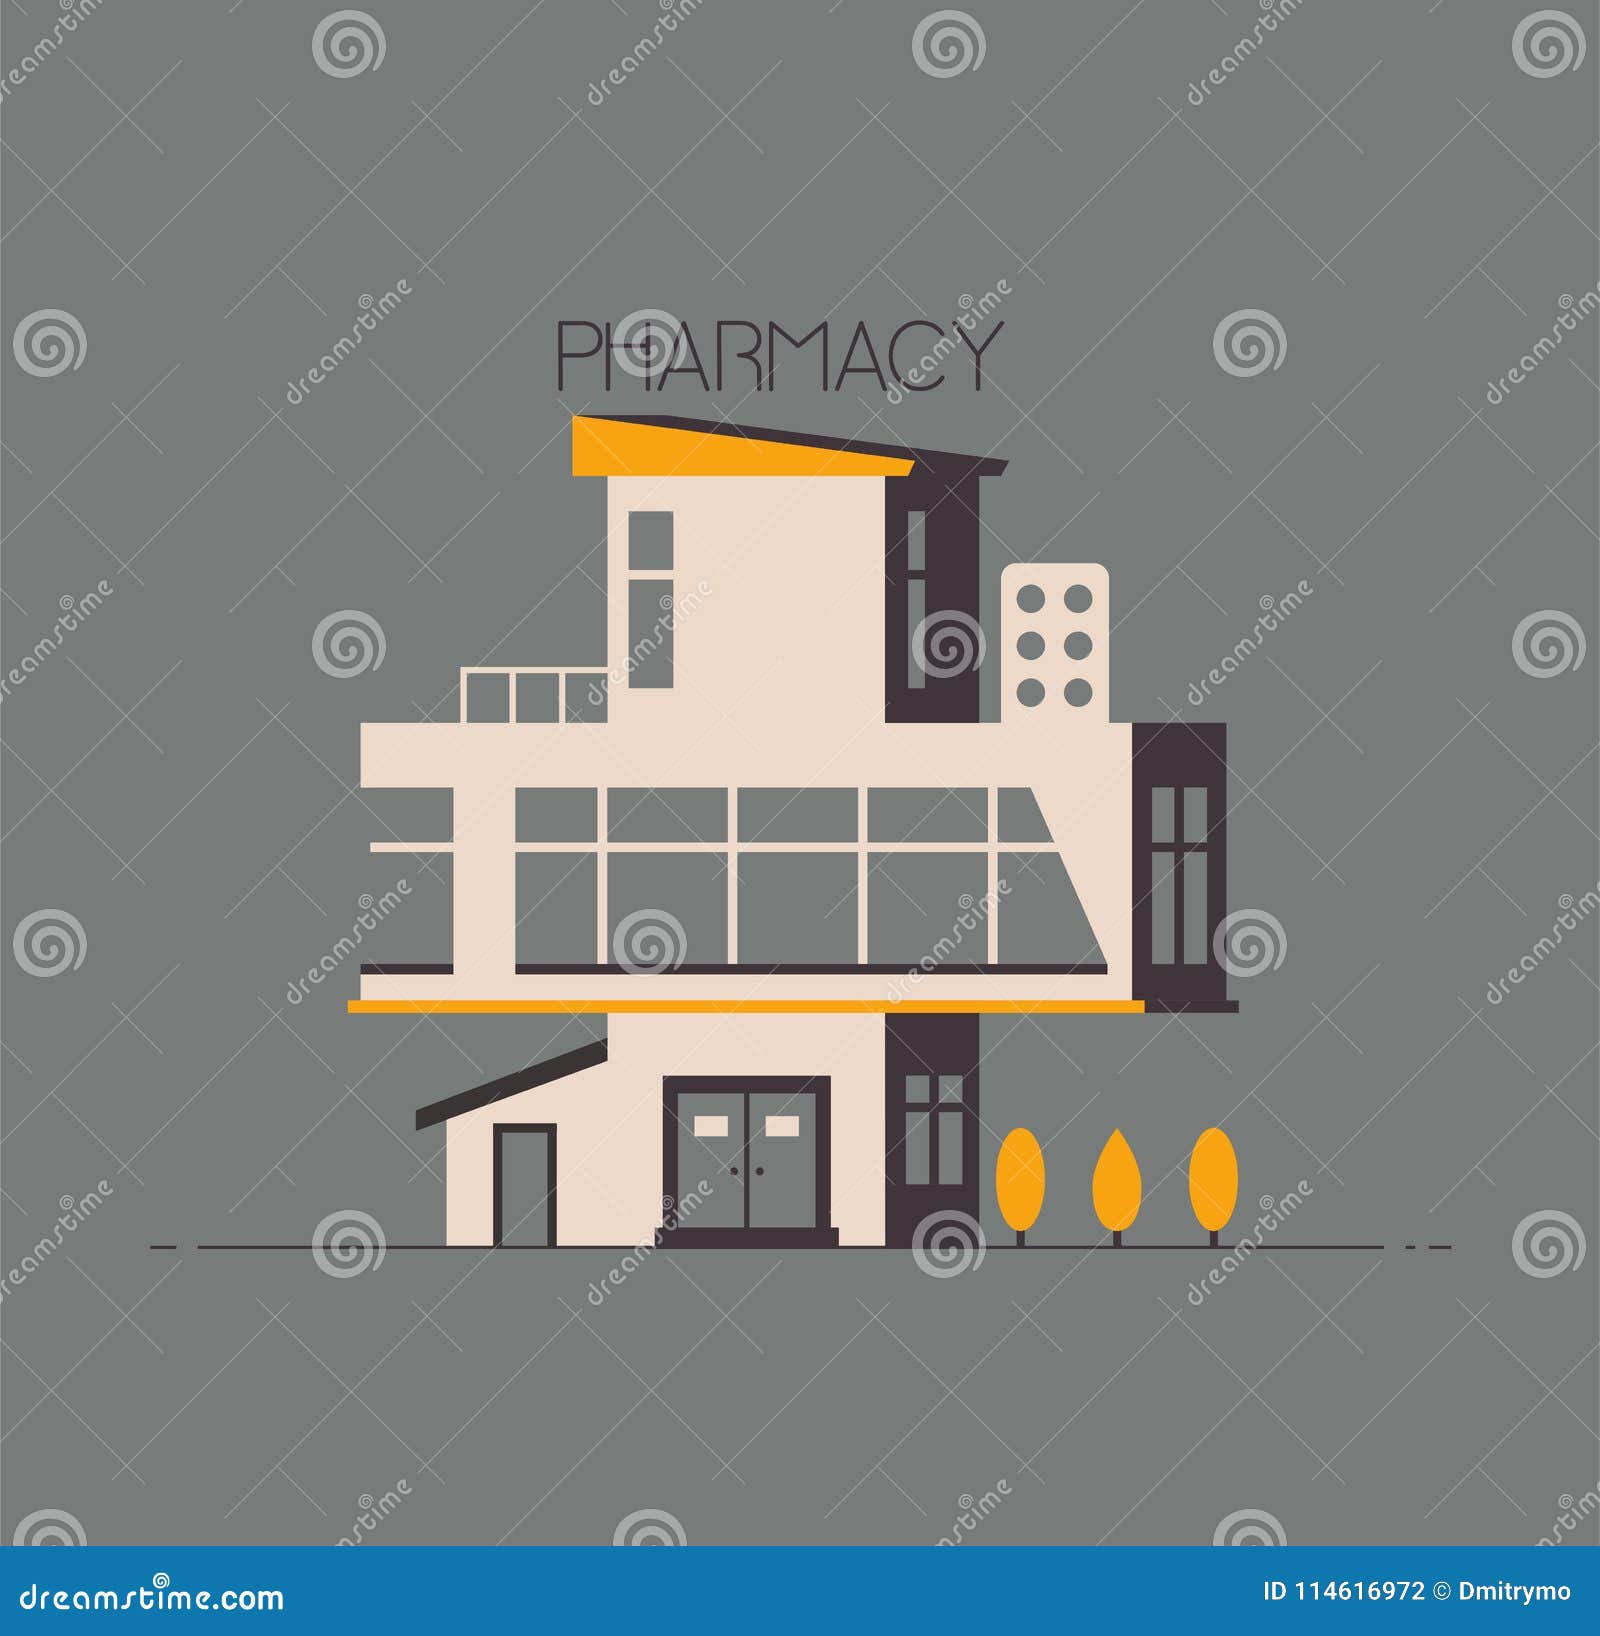 Pharmacy Drugstore Flat Design Vector Illustration Outdoor